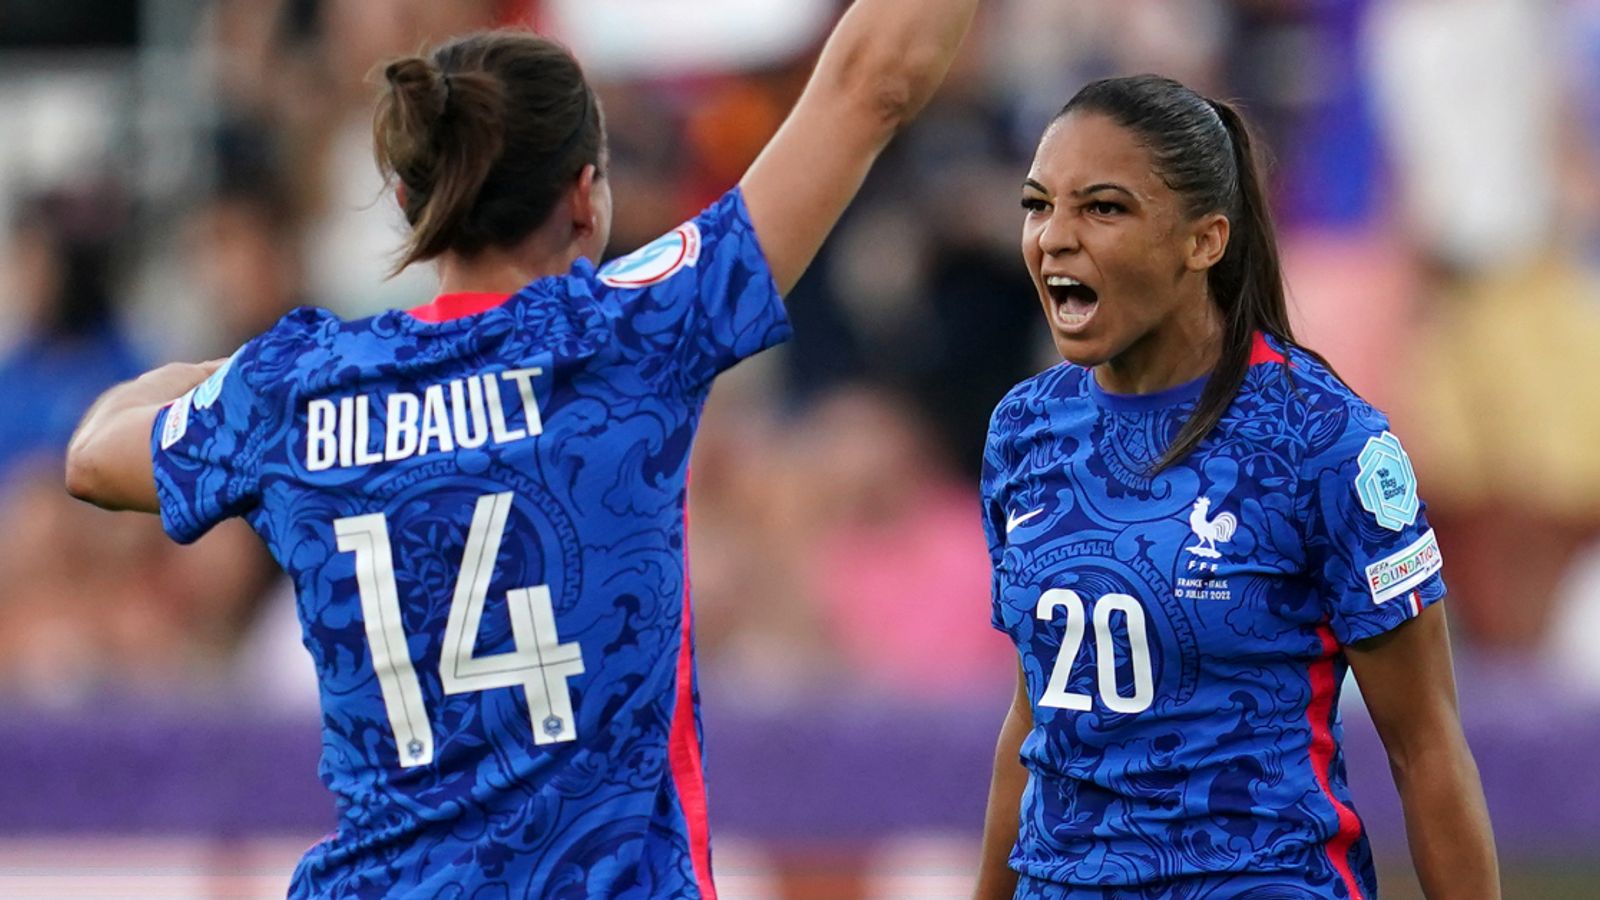 Prévia do Euro Feminino: Itália, Bélgica e Islândia lutam para se juntar à França nas quartas de final da Euro 2022 |  notícias de futebol